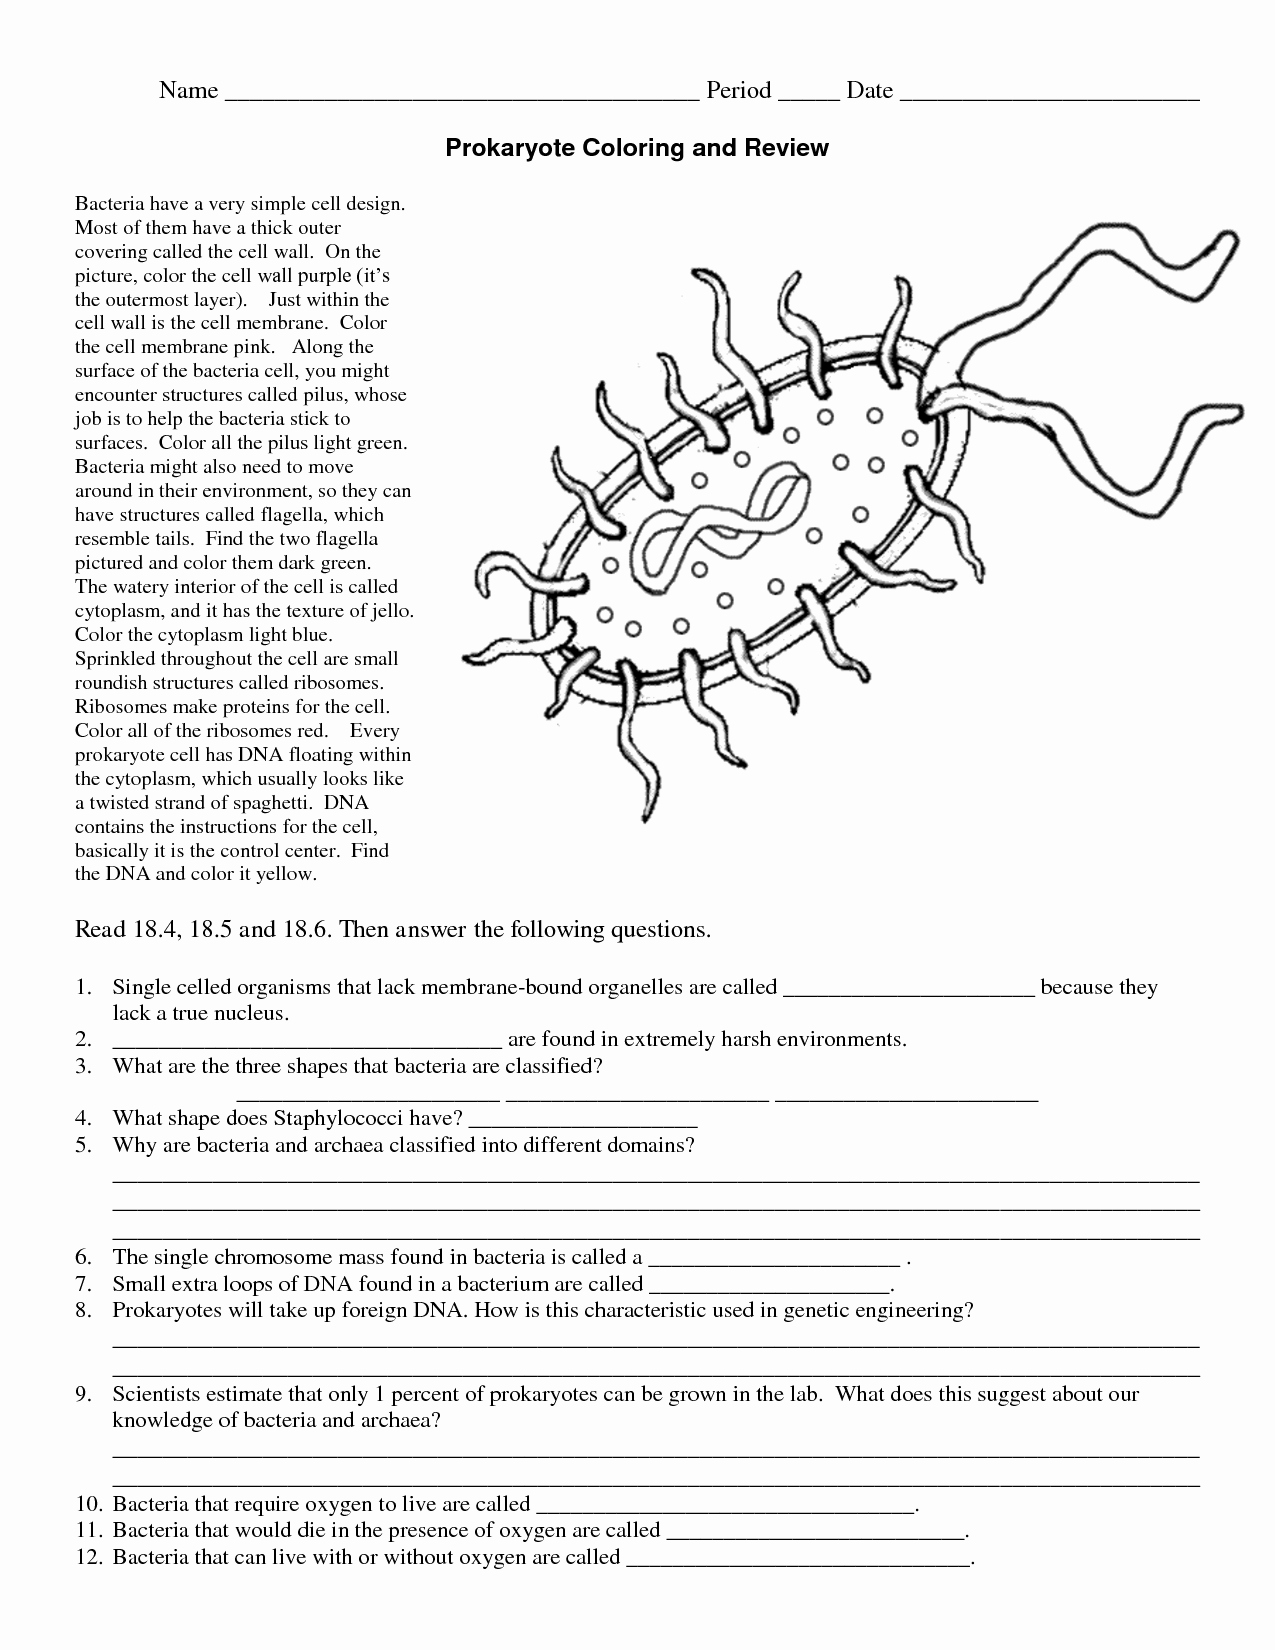 Prokaryotes And Eukaryotes Worksheet